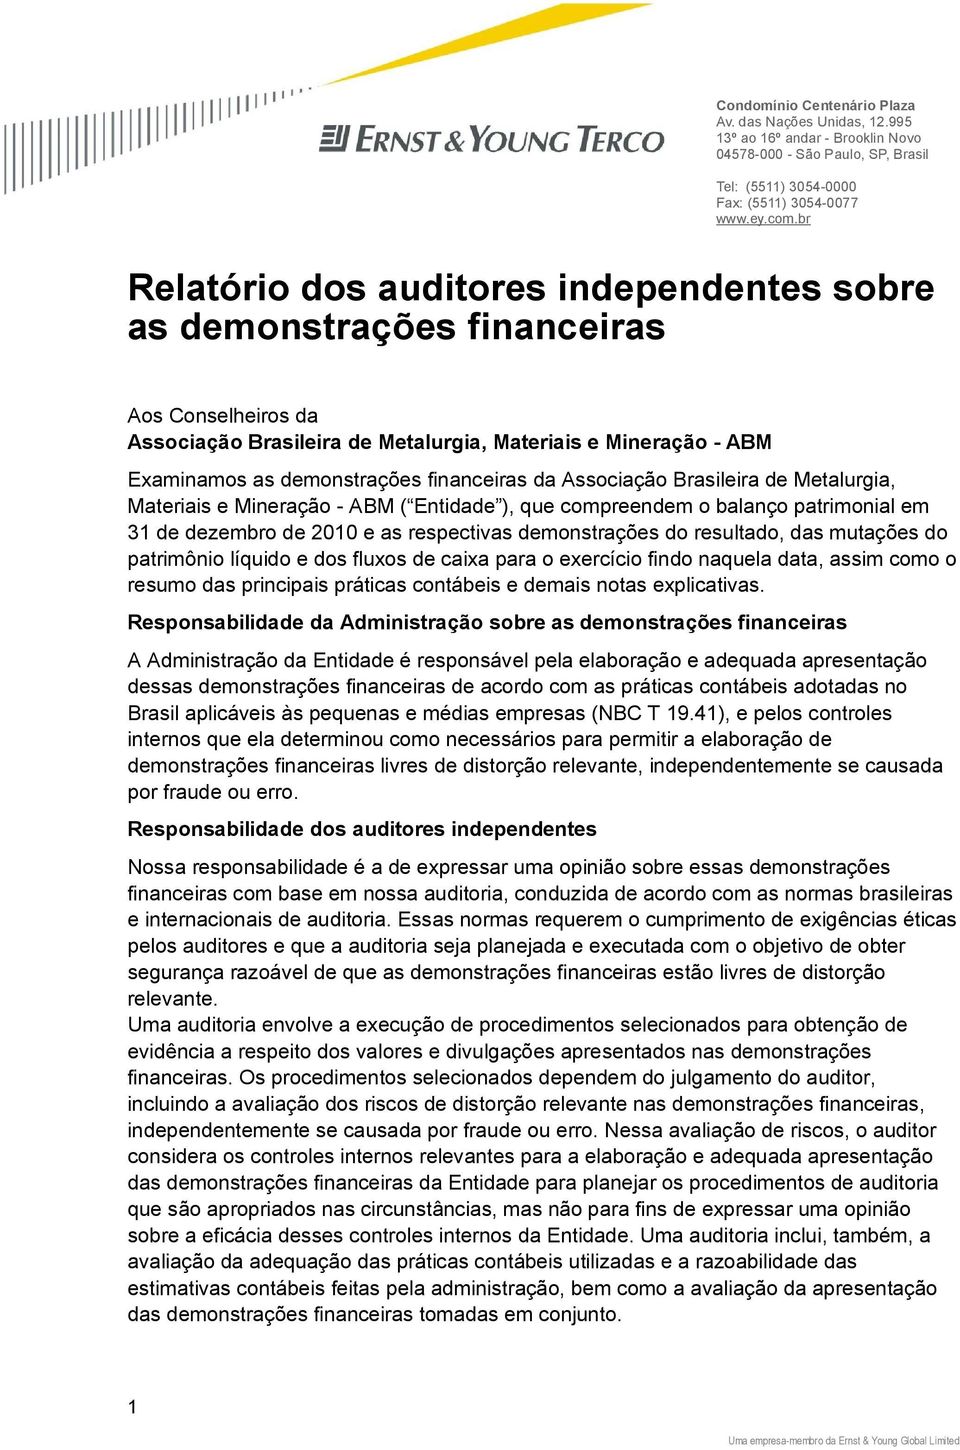 financeiras da Associação Brasileira de Metalurgia, Materiais e Mineração - ABM ( Entidade ), que compreendem o balanço patrimonial em 31 de dezembro de 2010 e as respectivas demonstrações do